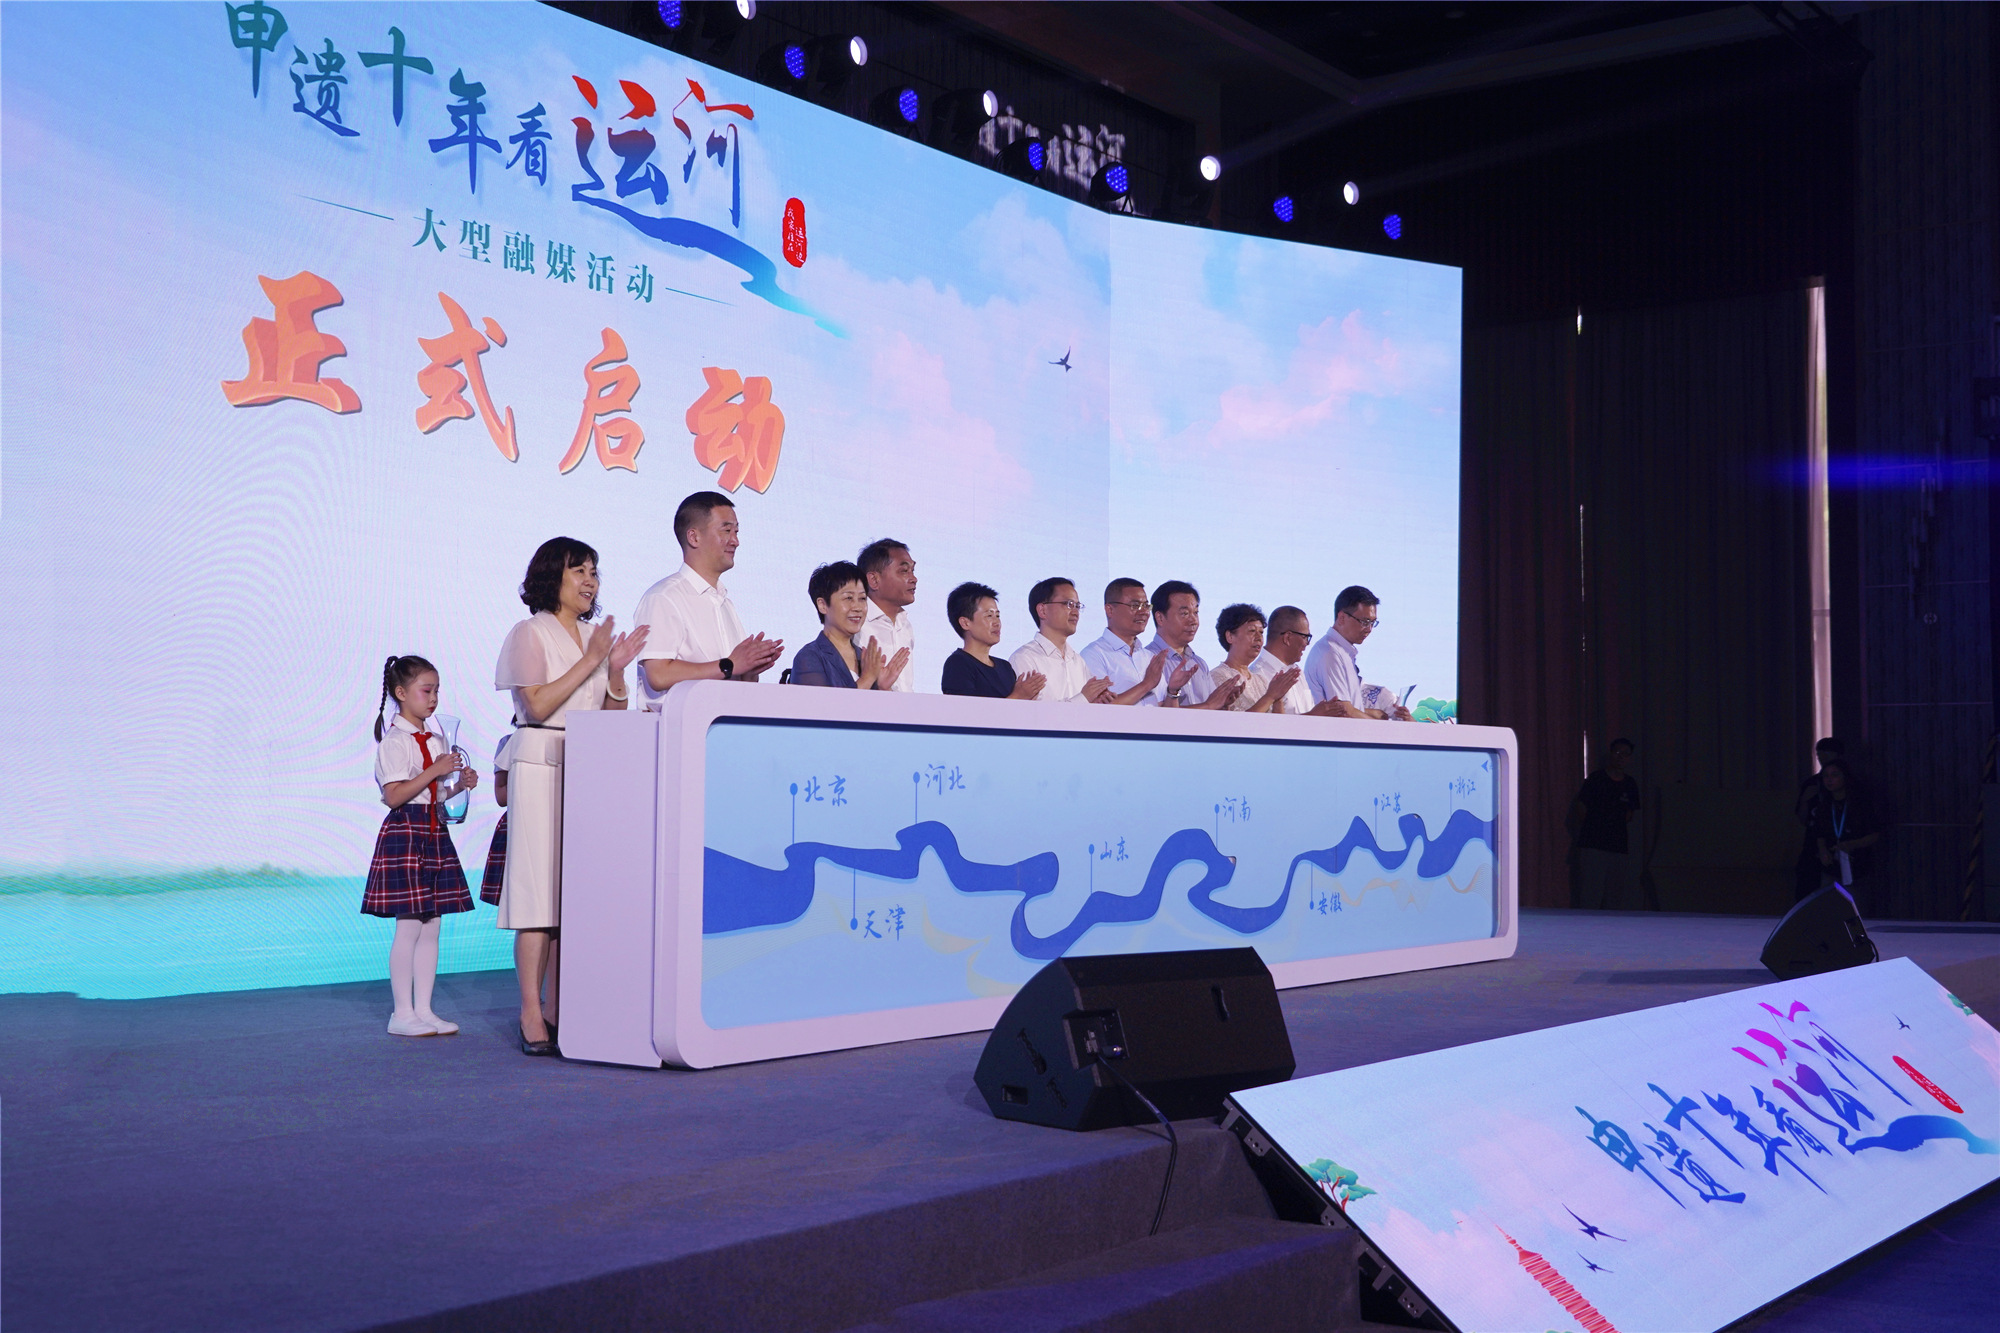 「申遺十年看運河」大型融媒活動在北京城市副中心舉辦